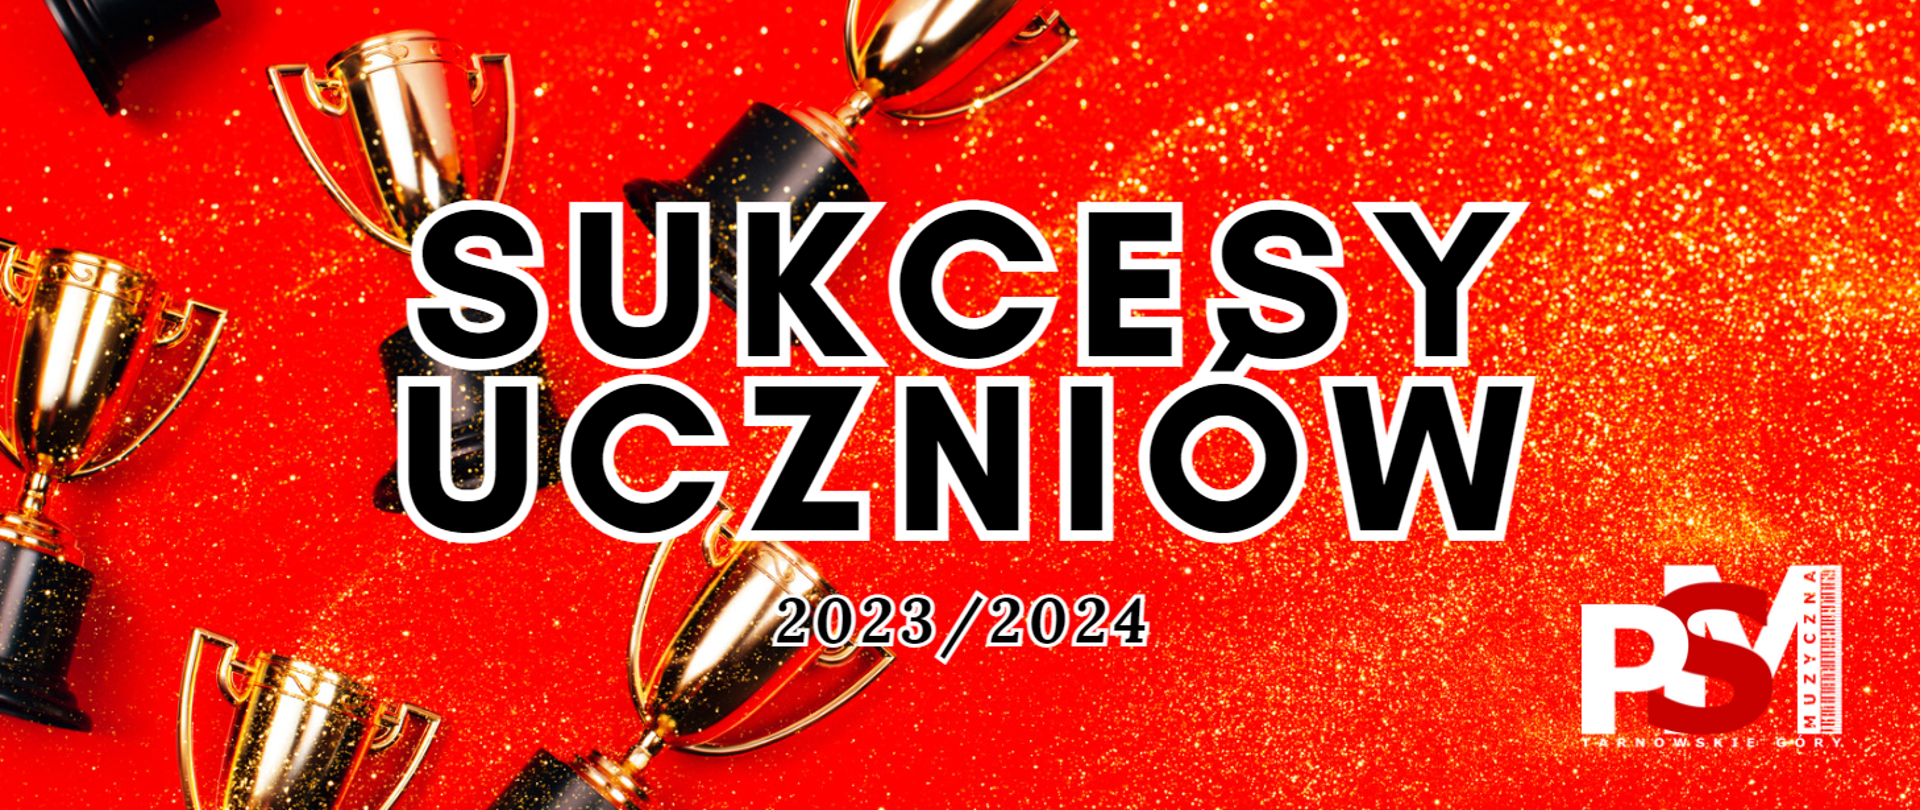 Na czerwonym tle na środku napis "Sukcesy uczniów 2023/2024" w czarnym kolorze. W dolnym prawym rogu logo szkoły. w lewej części plakatu pięć pucharów zwycięzców w kolorze złotym.